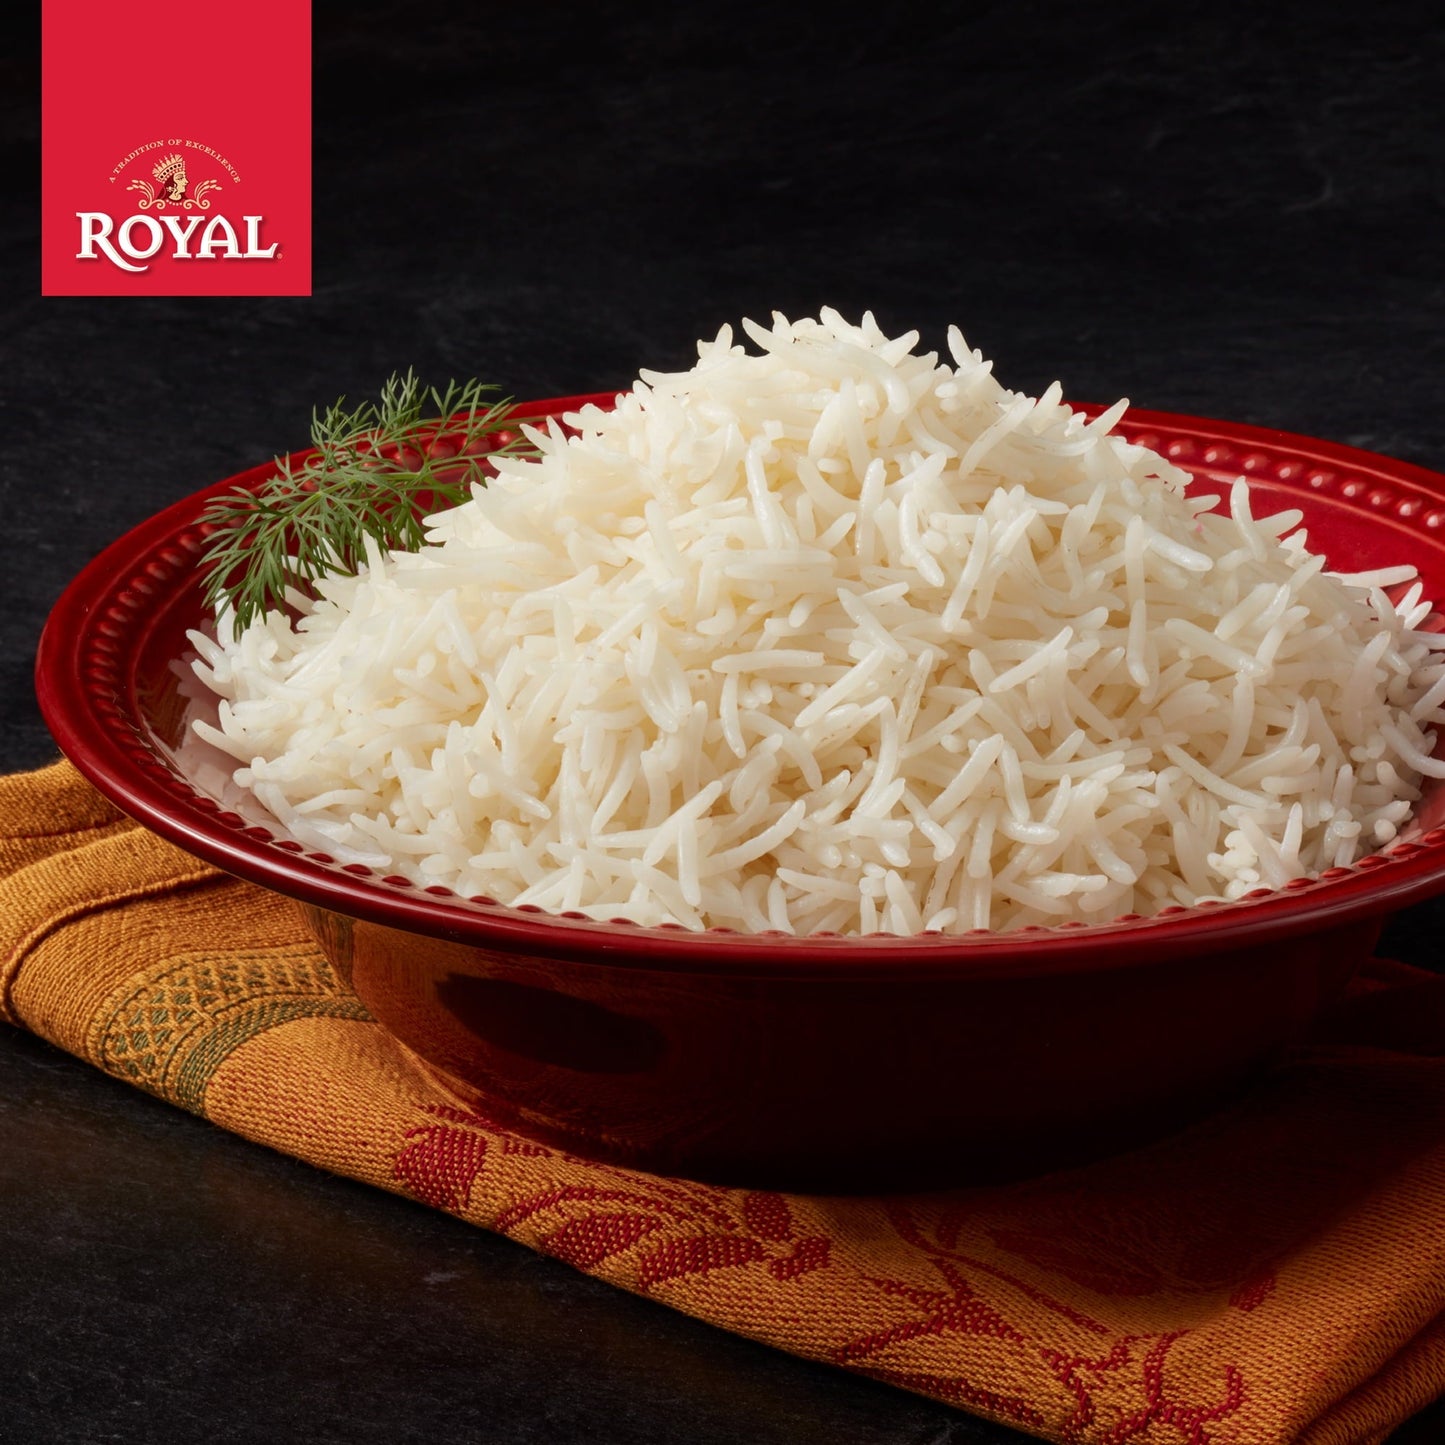 Royal White Basmati Long Grain Rice, 5 Lb Bulk Bag